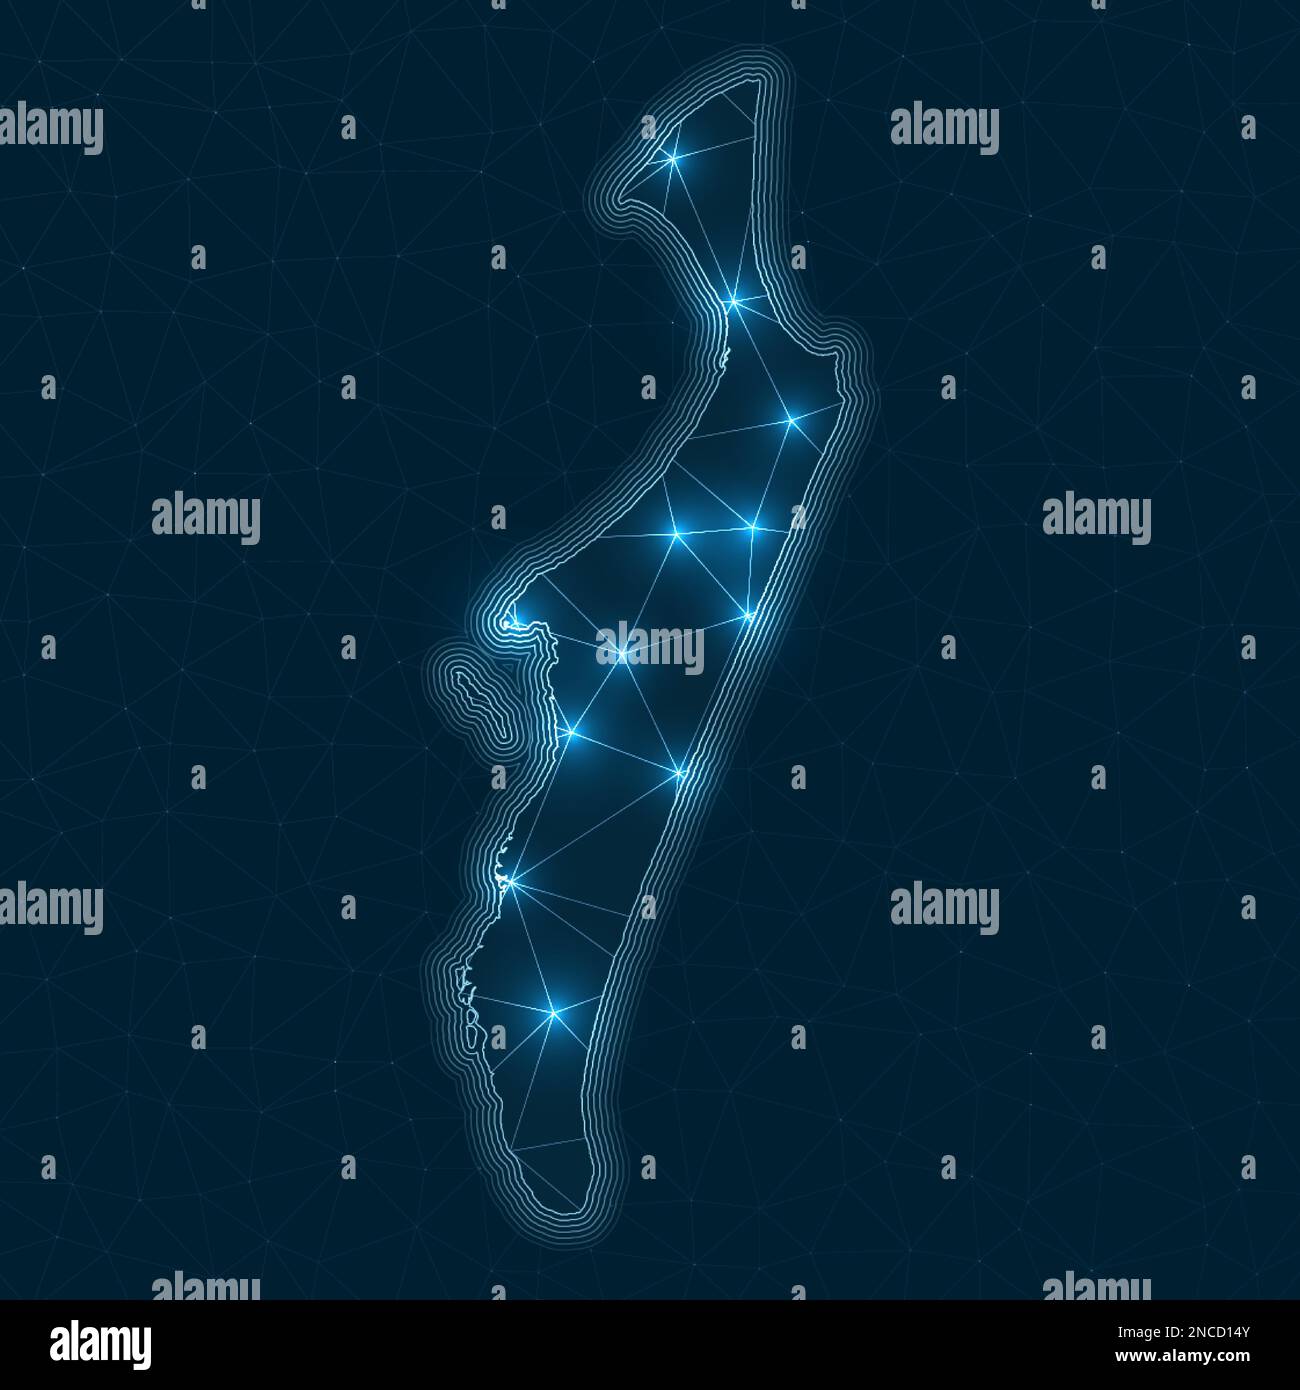 Fraser Island Netzwerkkarte. Abstrakte geometrische Karte der Insel. Digitale Anschlüsse und Telekommunikationsdesign. Leuchtendes Internetnetzwerk. Stilvoll vs Stock Vektor